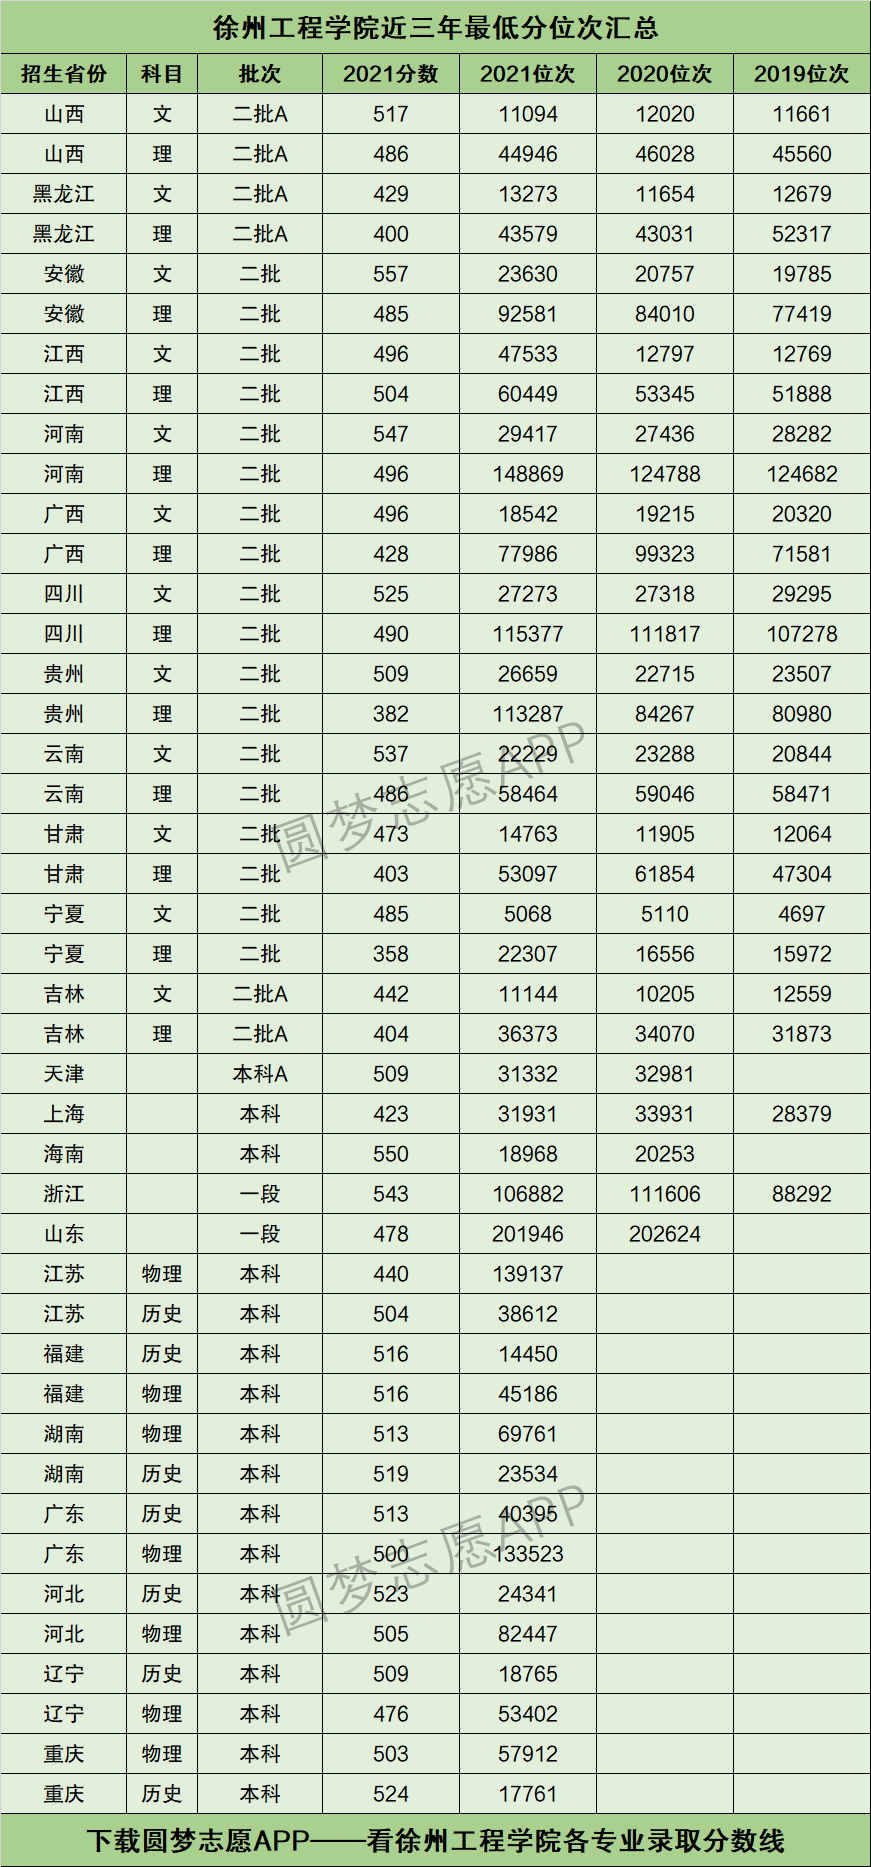 下图为徐州工程学院在全国各个省市2019年~2021年的最低分位次表数据